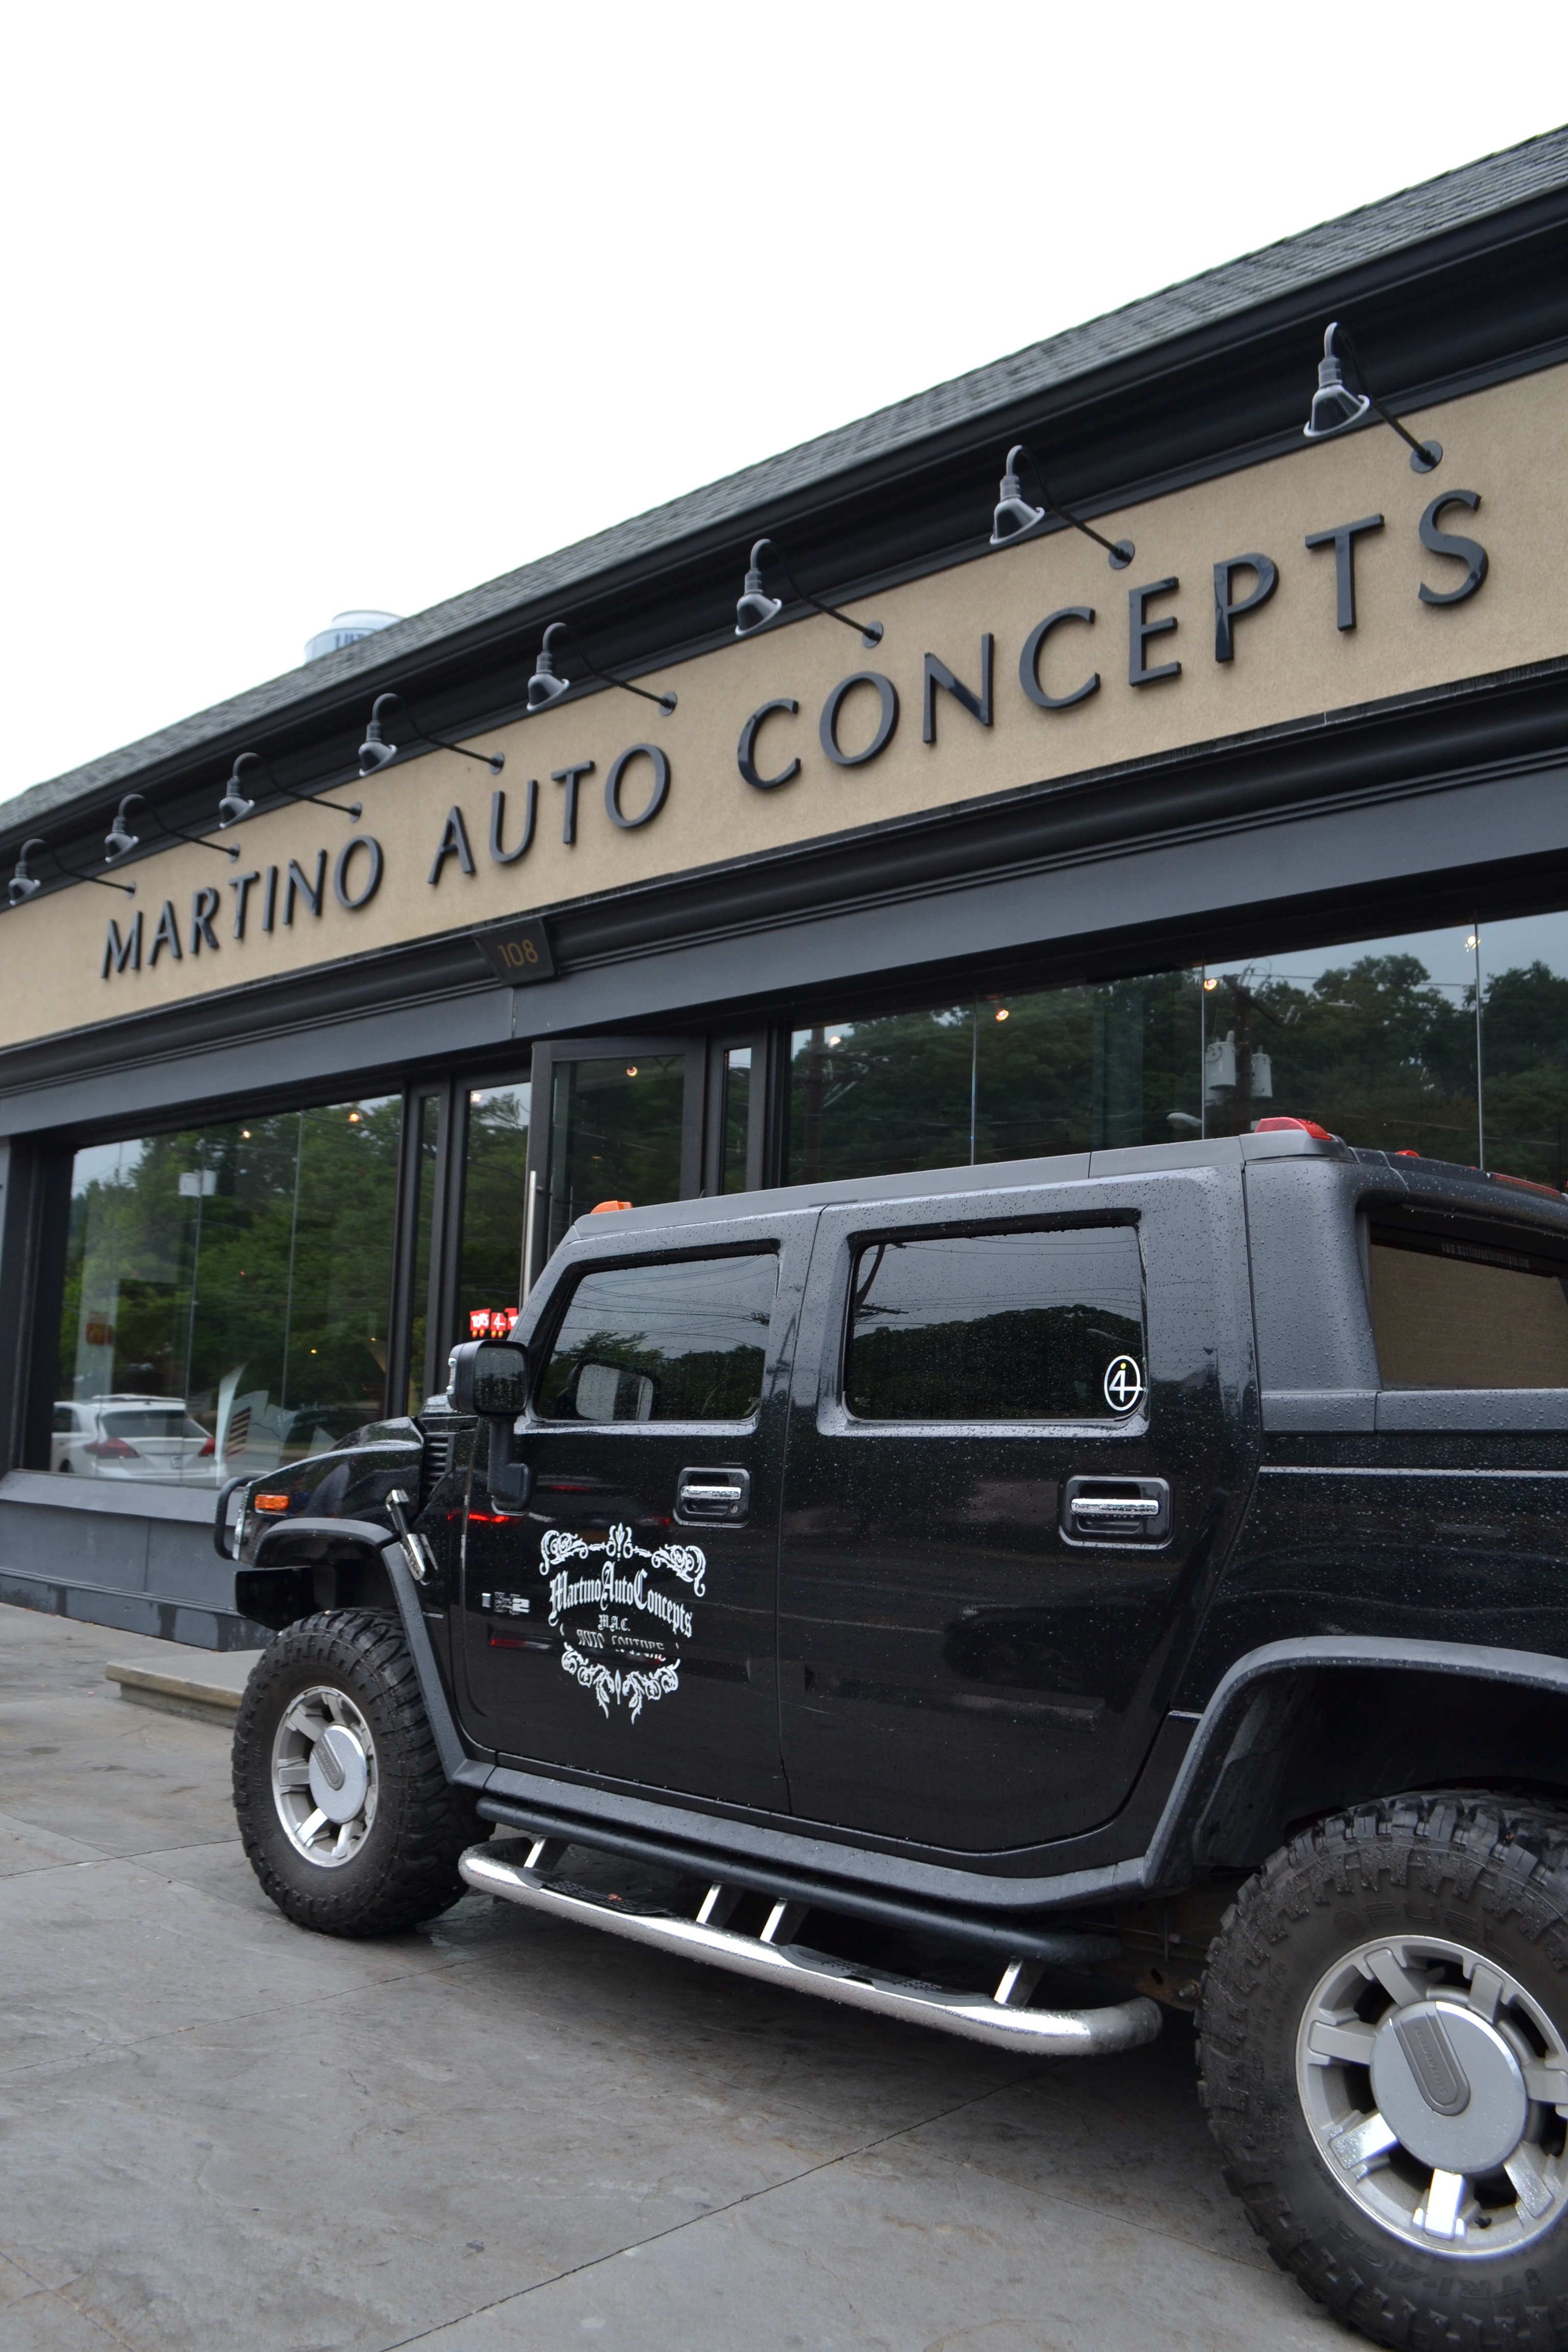 Martino Auto Concepts, Glen Cove, NY